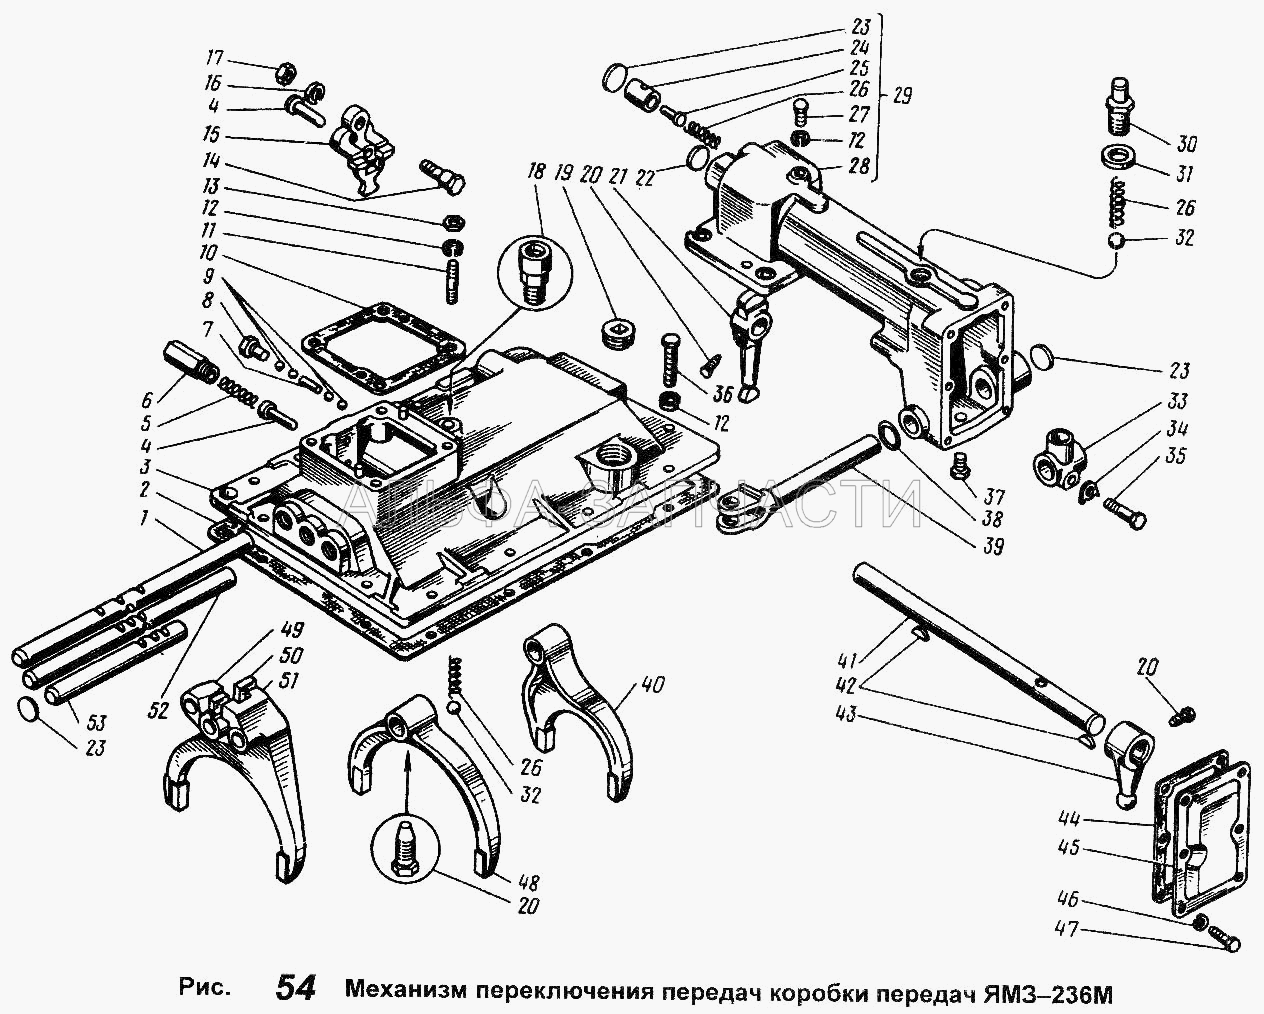 Механизм переключения передач коробки передач ЯМЗ-236М (201454-П29 Болт М8х16) 